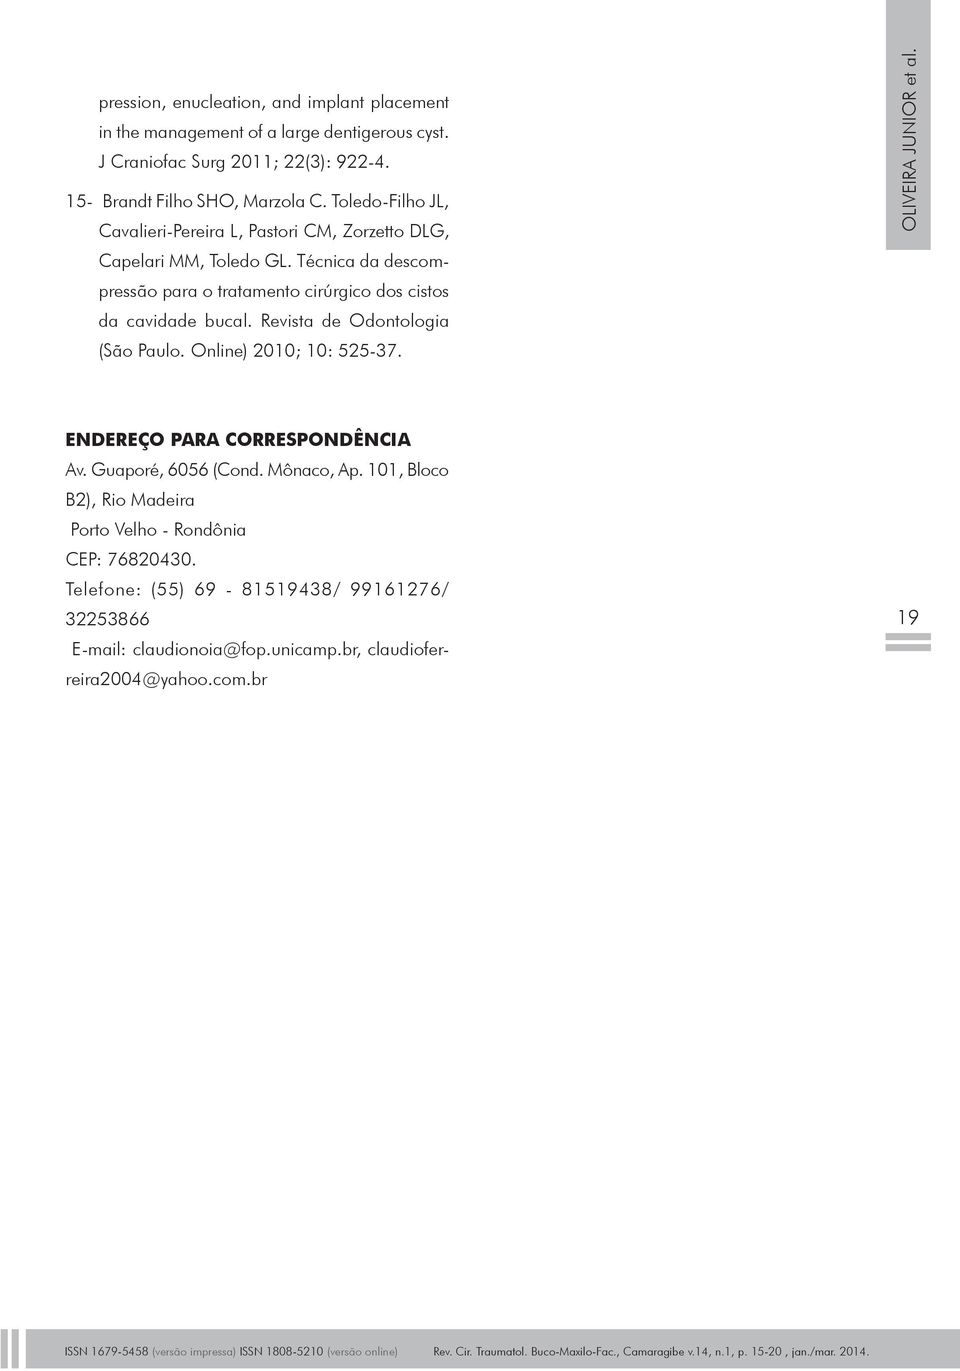 Revista de Odontologia (São Paulo. Online) 2010; 10: 525-37. oliveira junior et al. Endereço para correspondência Av. Guaporé, 6056 (Cond. Mônaco, Ap.